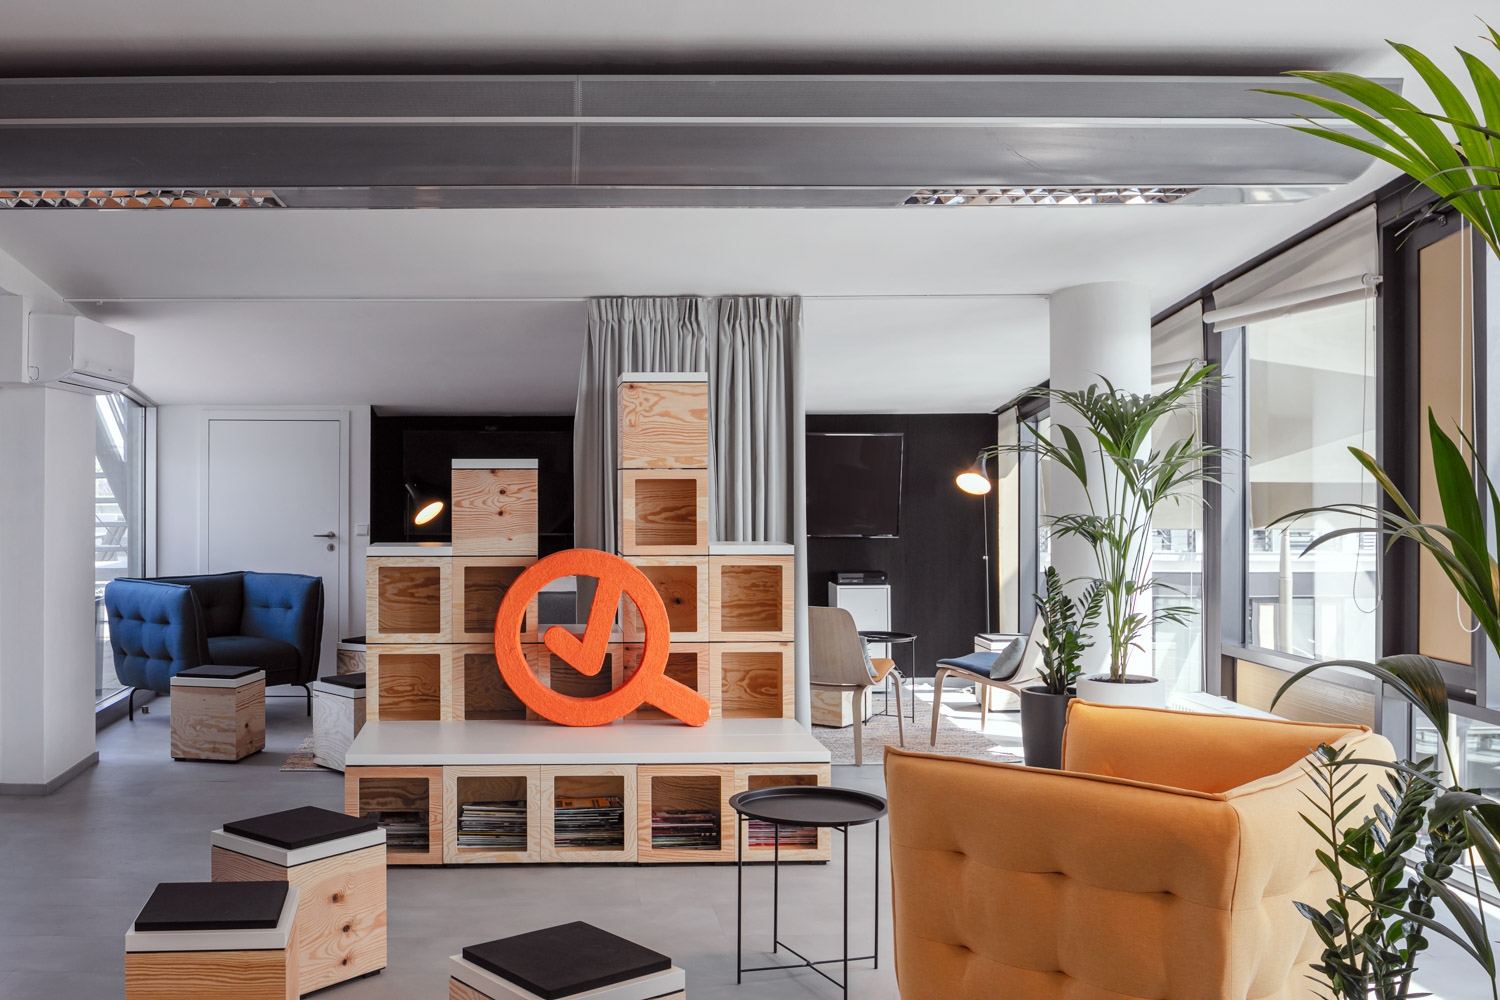 Heureka办事处-布拉格|ART-Arrakis | 建筑室内设计的创新与灵感